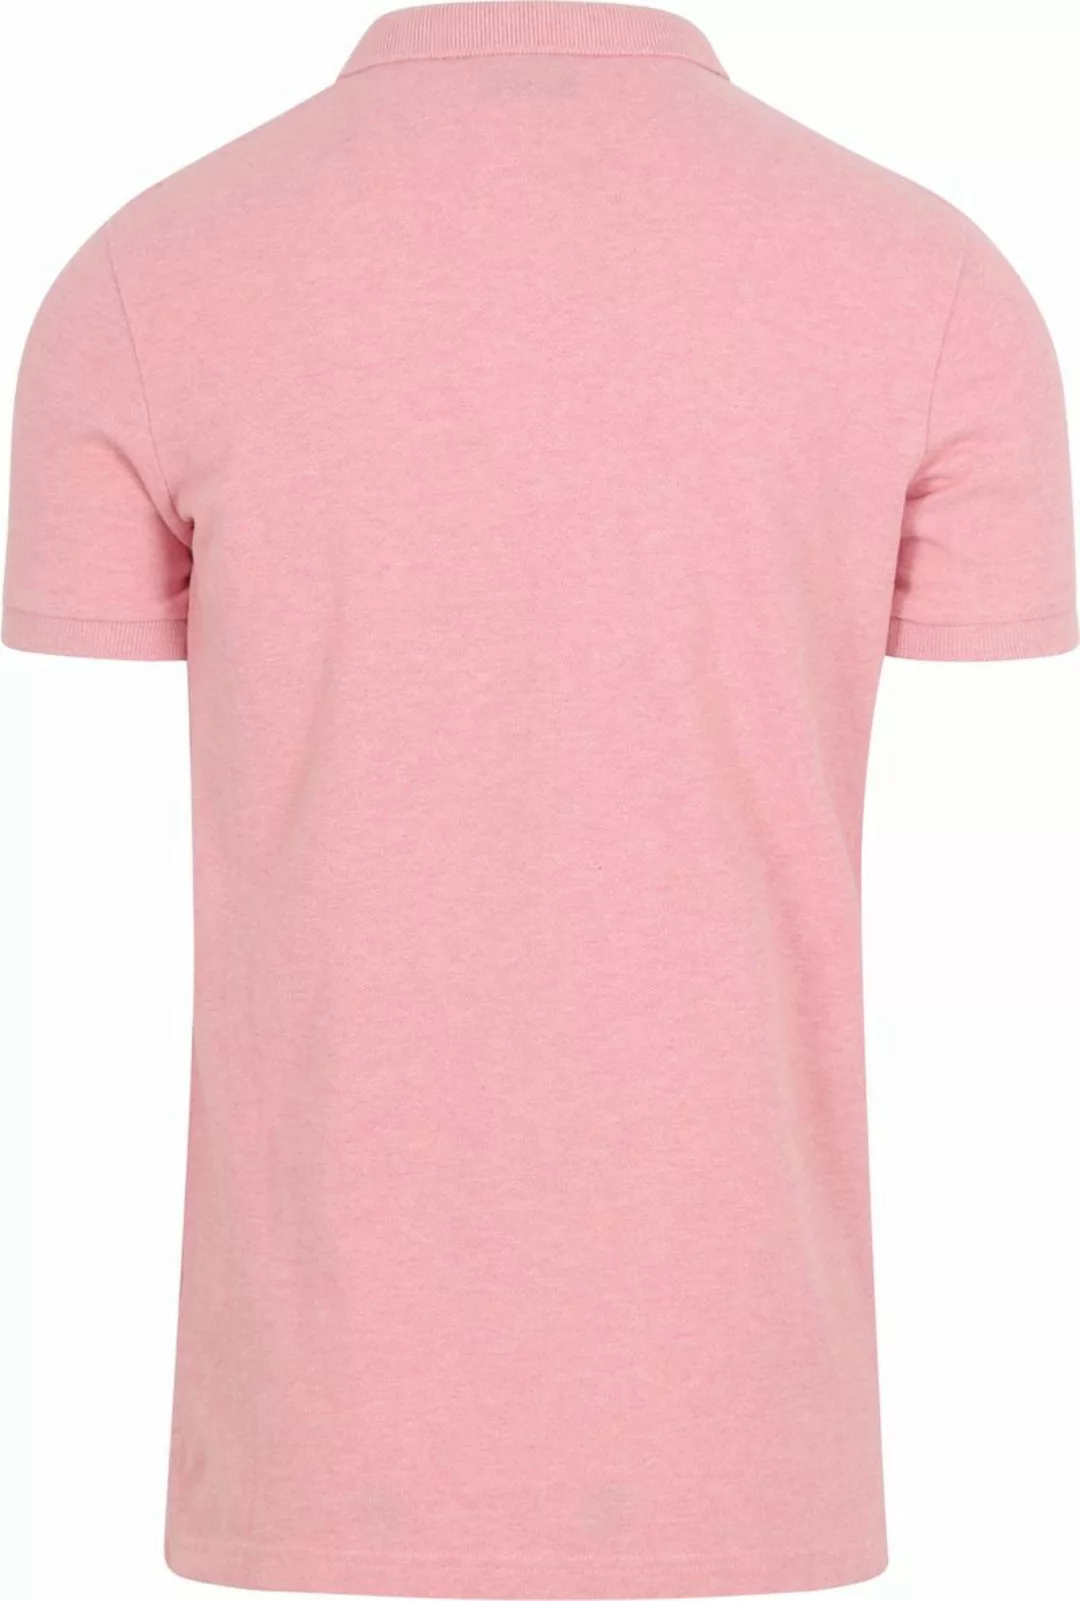 Superdry Classic Poloshirt Melange Rosa - Größe M günstig online kaufen